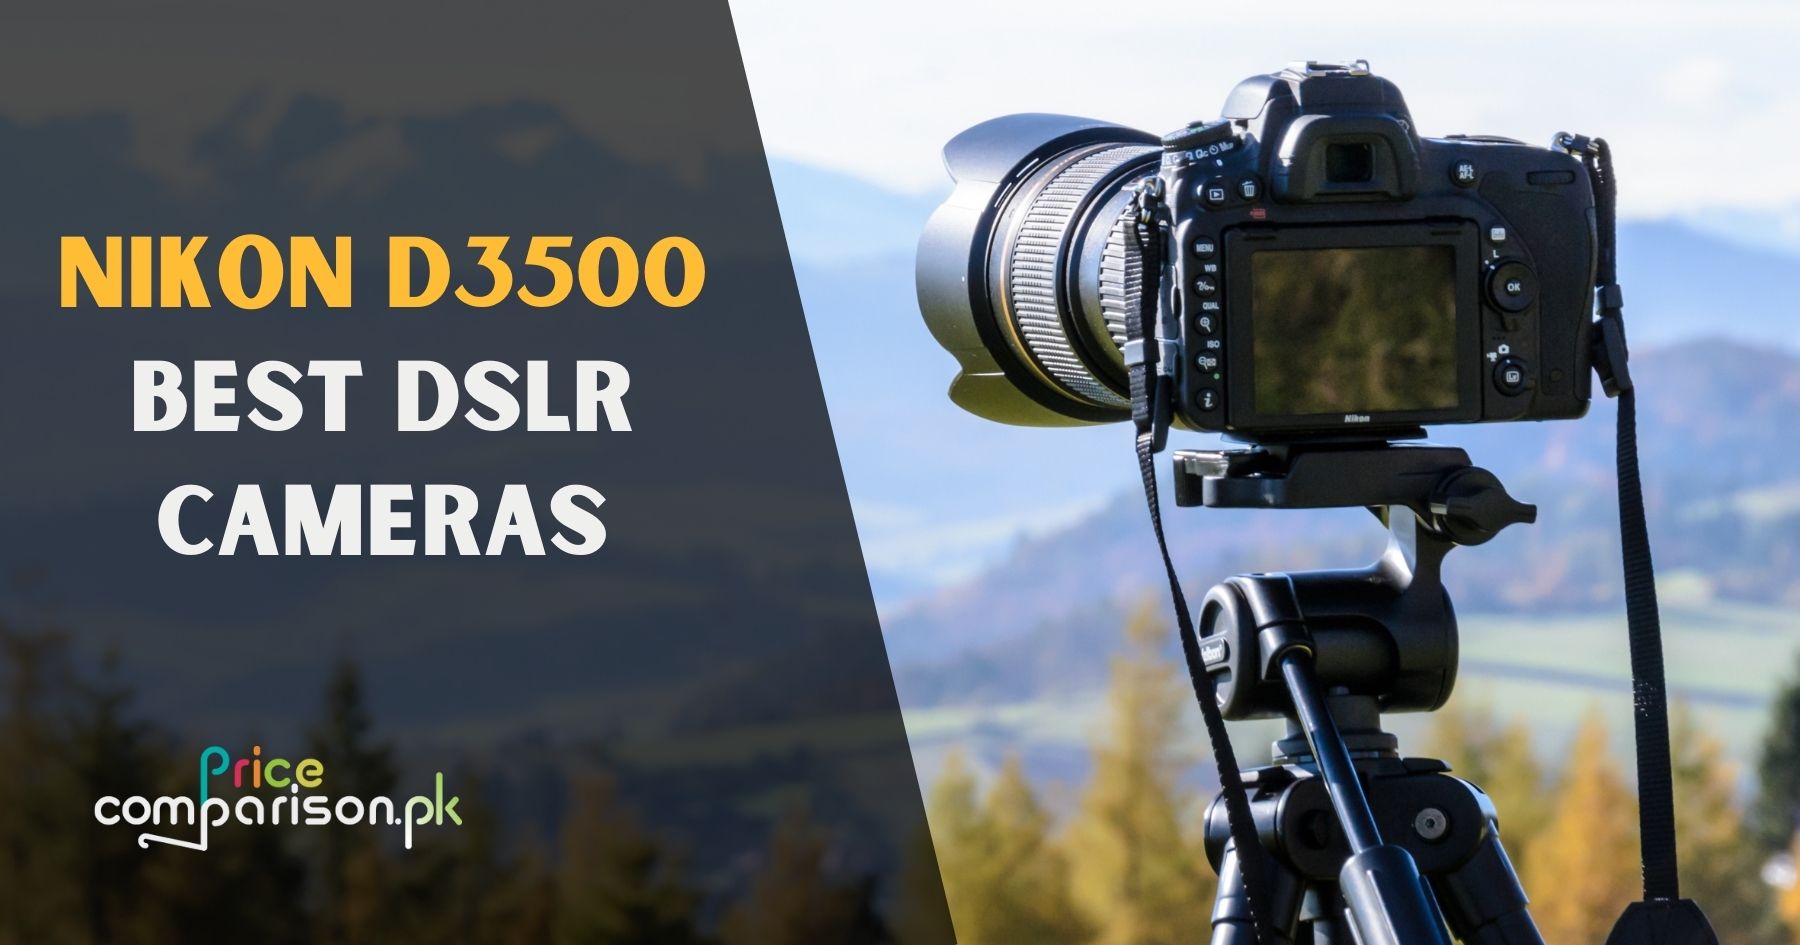 Nikon D3500 Best DSLR Cameras